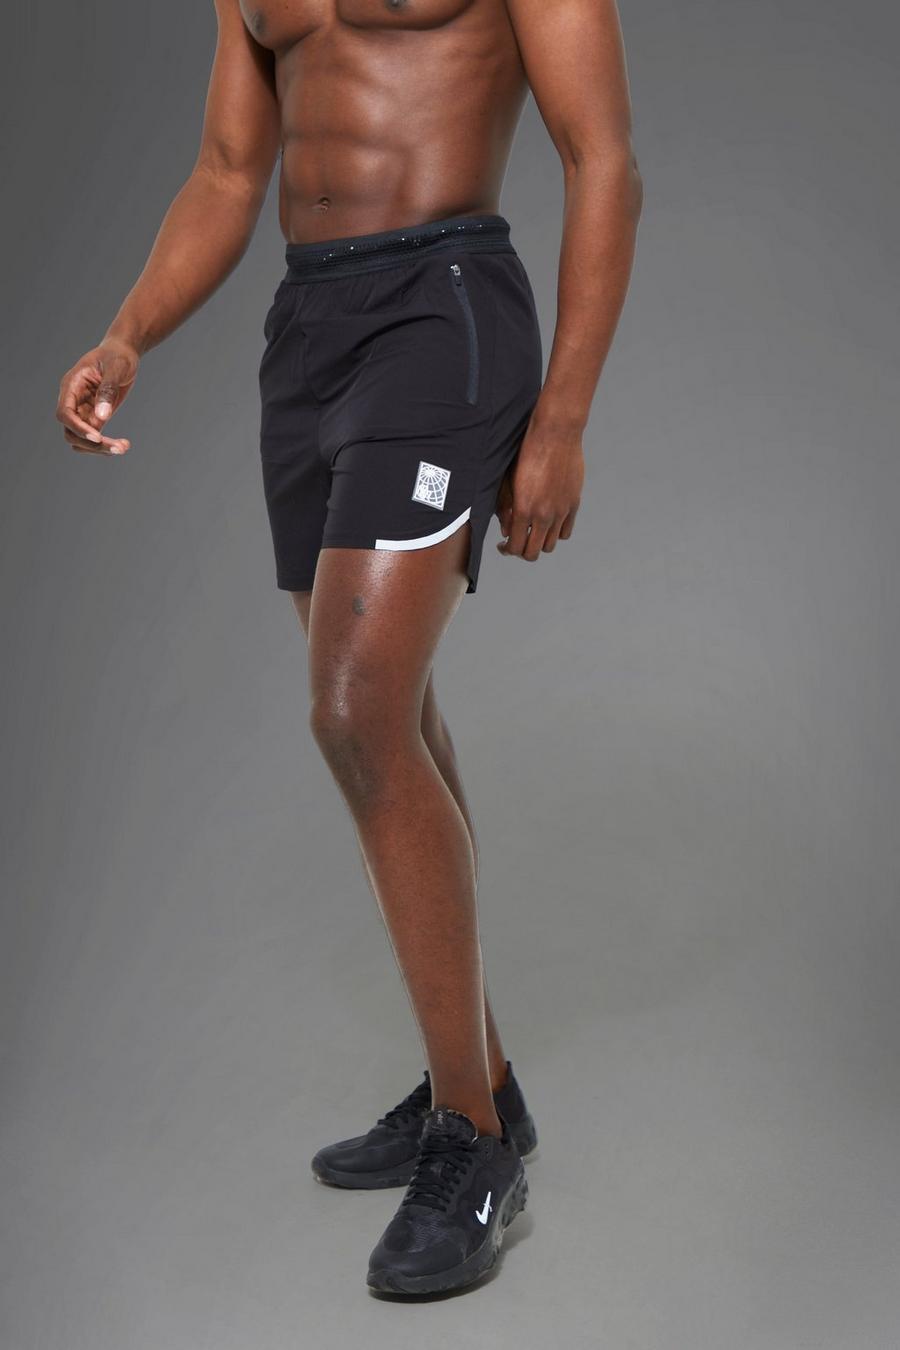 Pantaloncini Man Active con dettagli riflettenti, Black negro